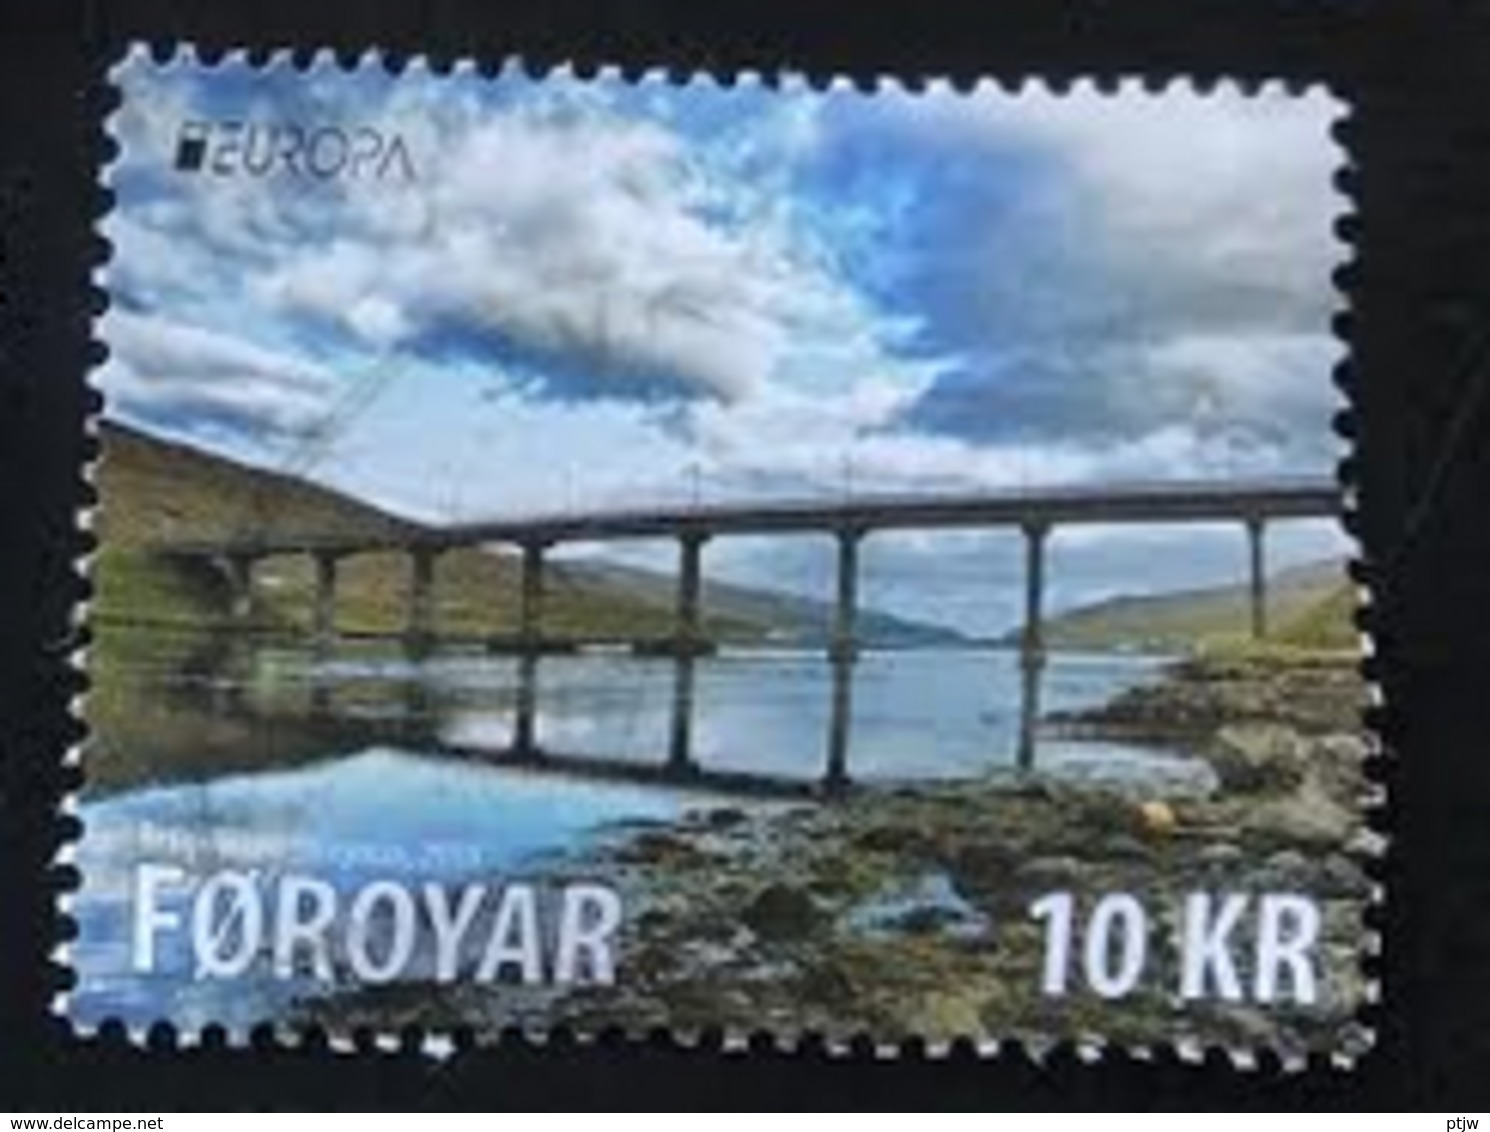 Used Stamp Of Faroe Islands 2018: Europa Europazegel Cept Faroer - 2018